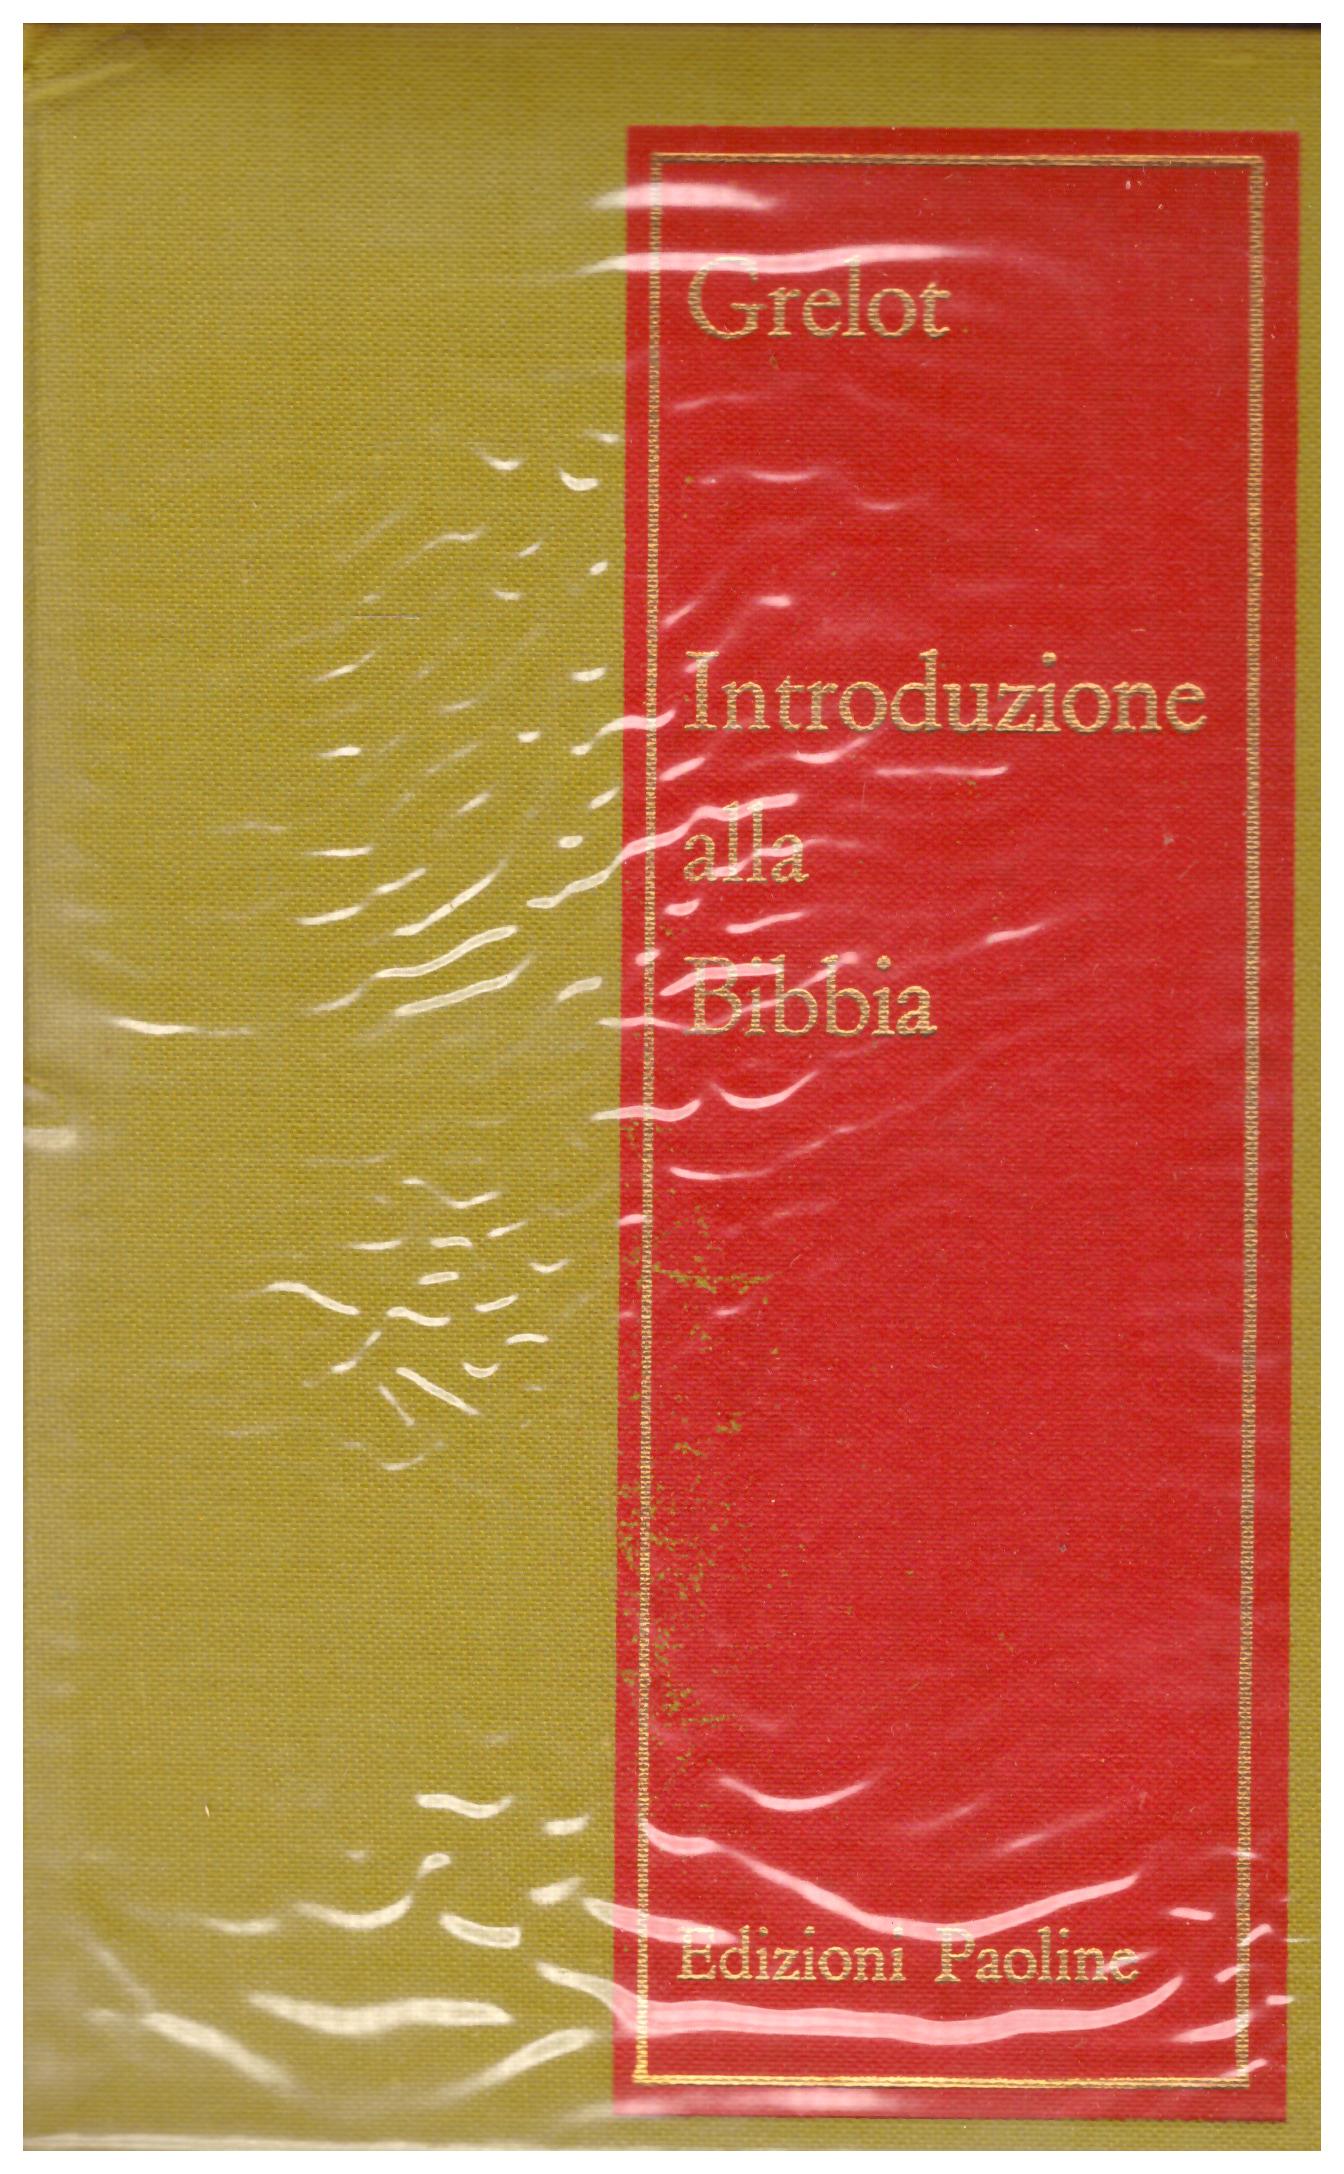 Titolo: Introduzione alla Bibbia Autore: Pierre Grelot Editore: edizioni paoline, 1965